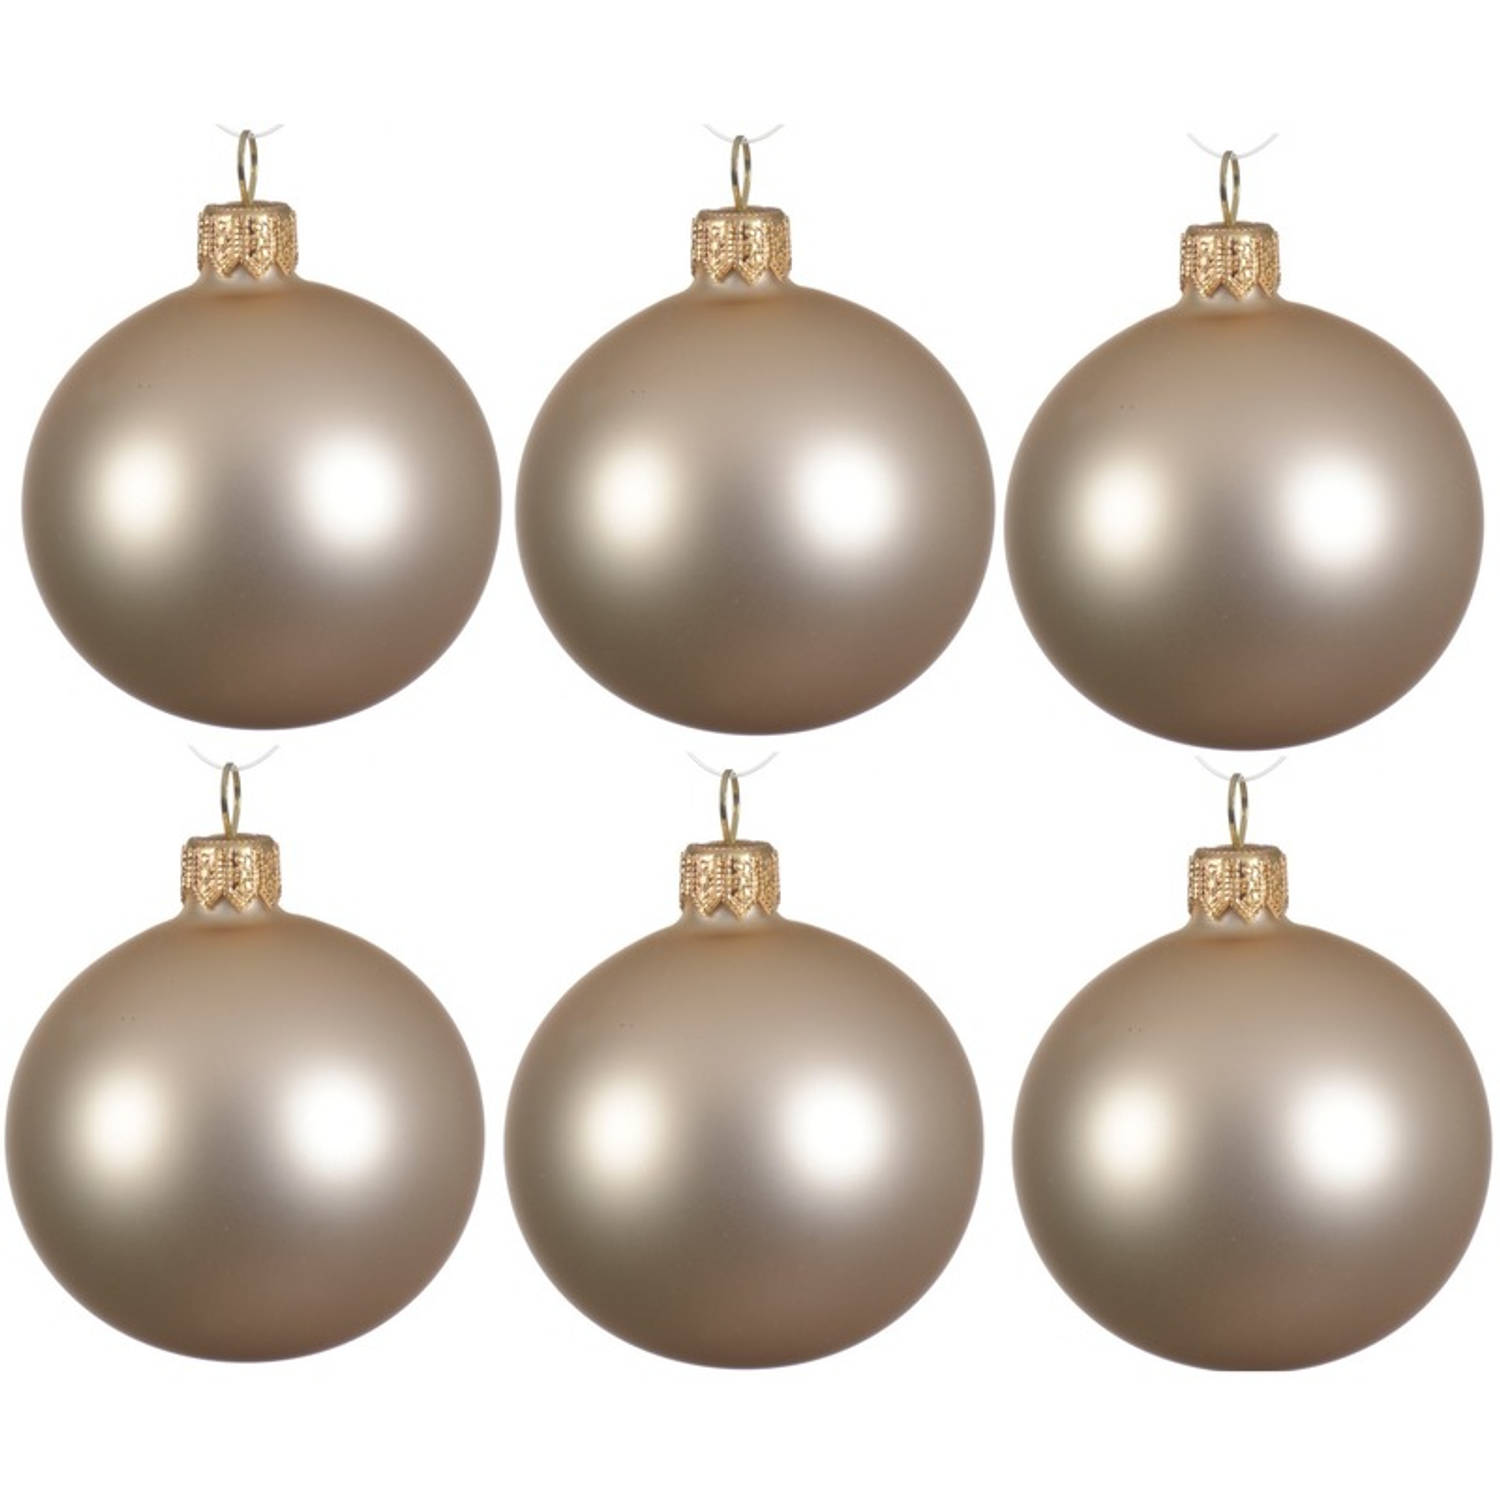 12x Licht Parel-champagne Glazen Kerstballen 8 Cm Mat-matte Kerstboomversiering Licht Parel-champagn